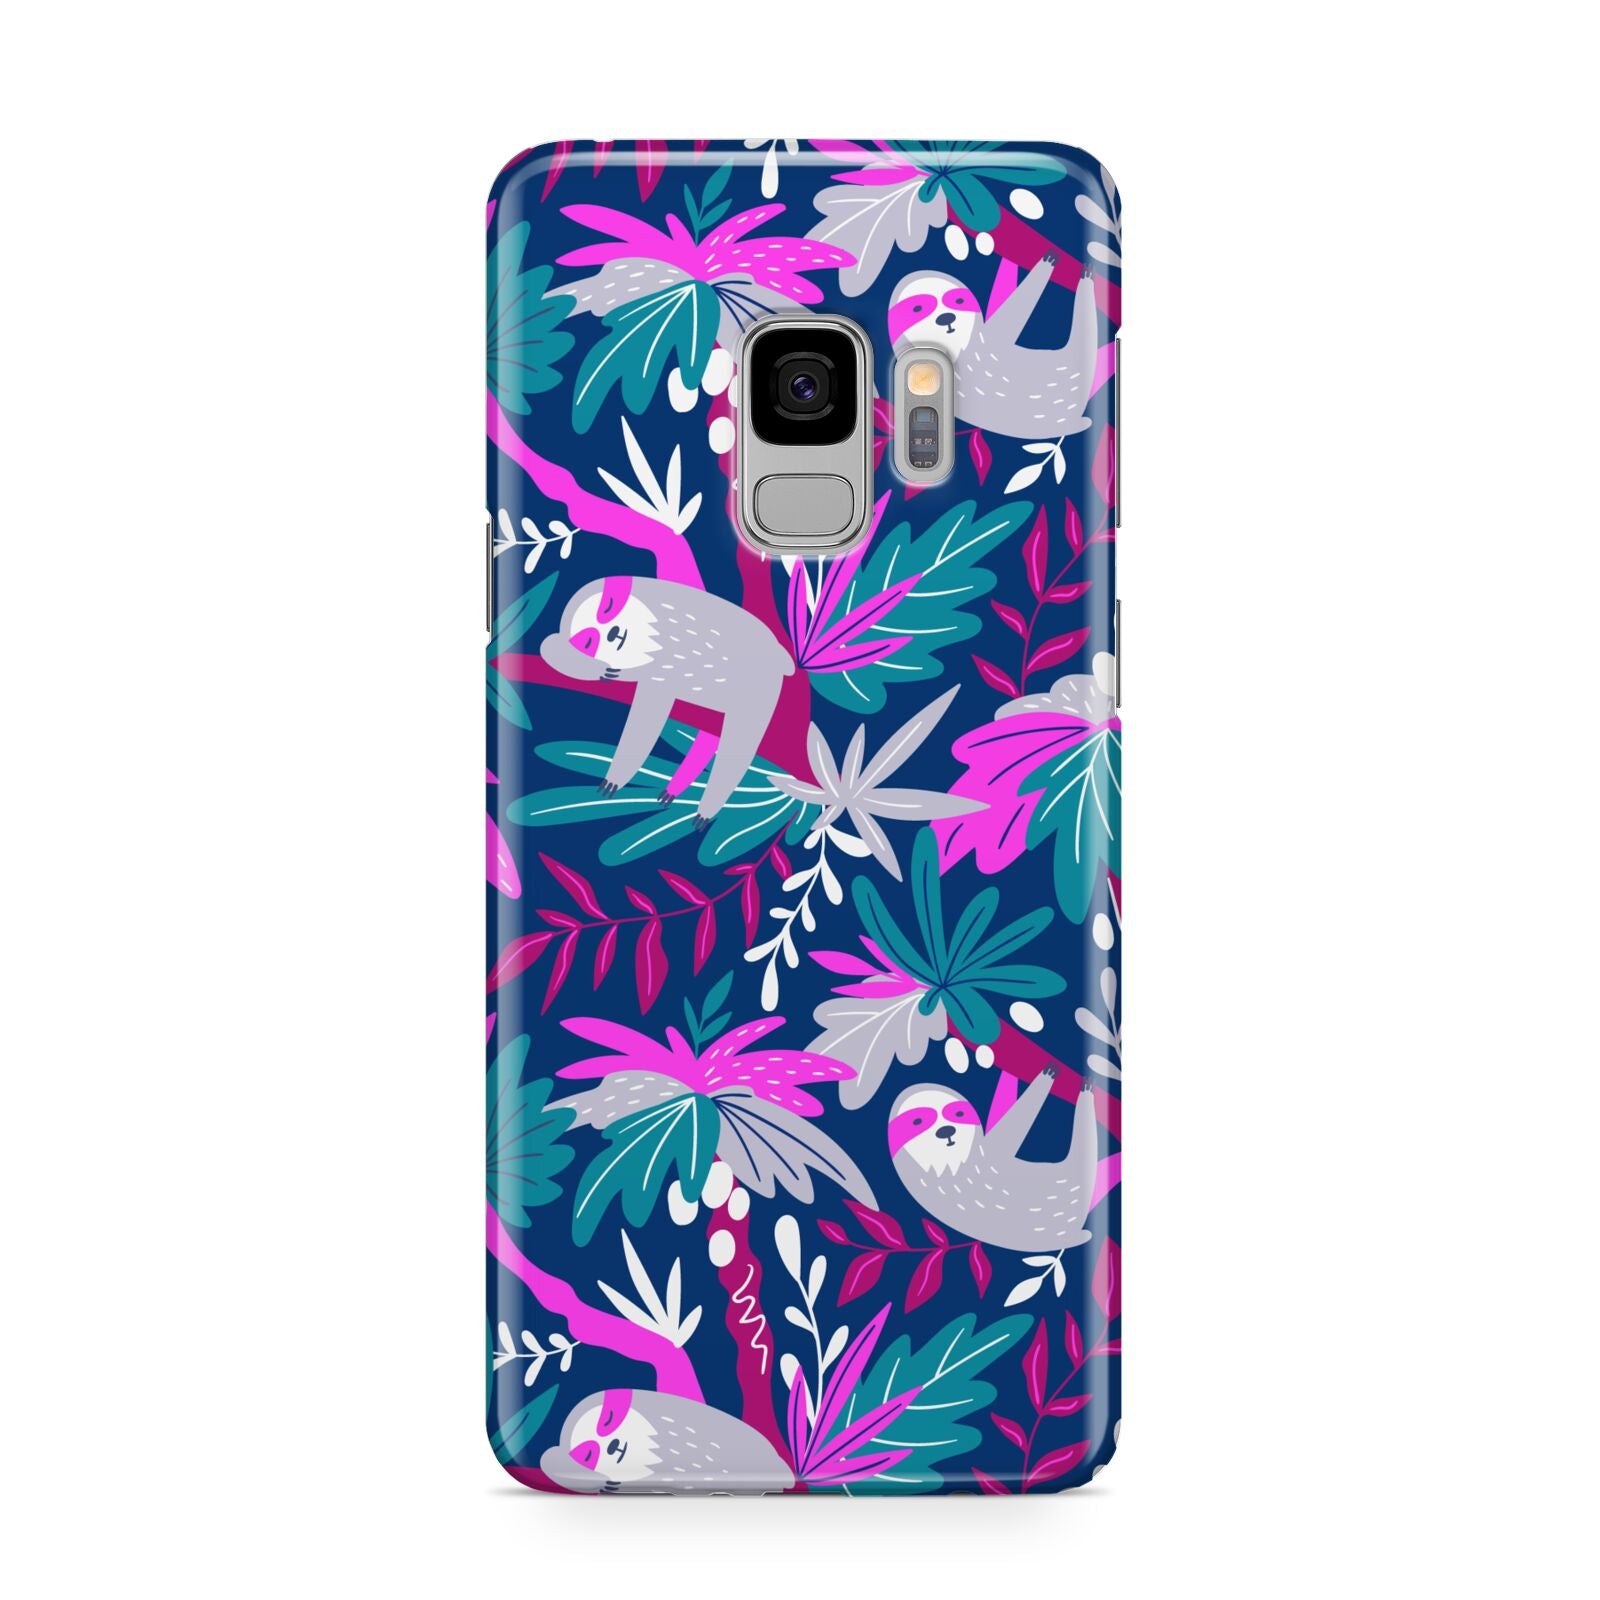 Sloth Samsung Galaxy S9 Case